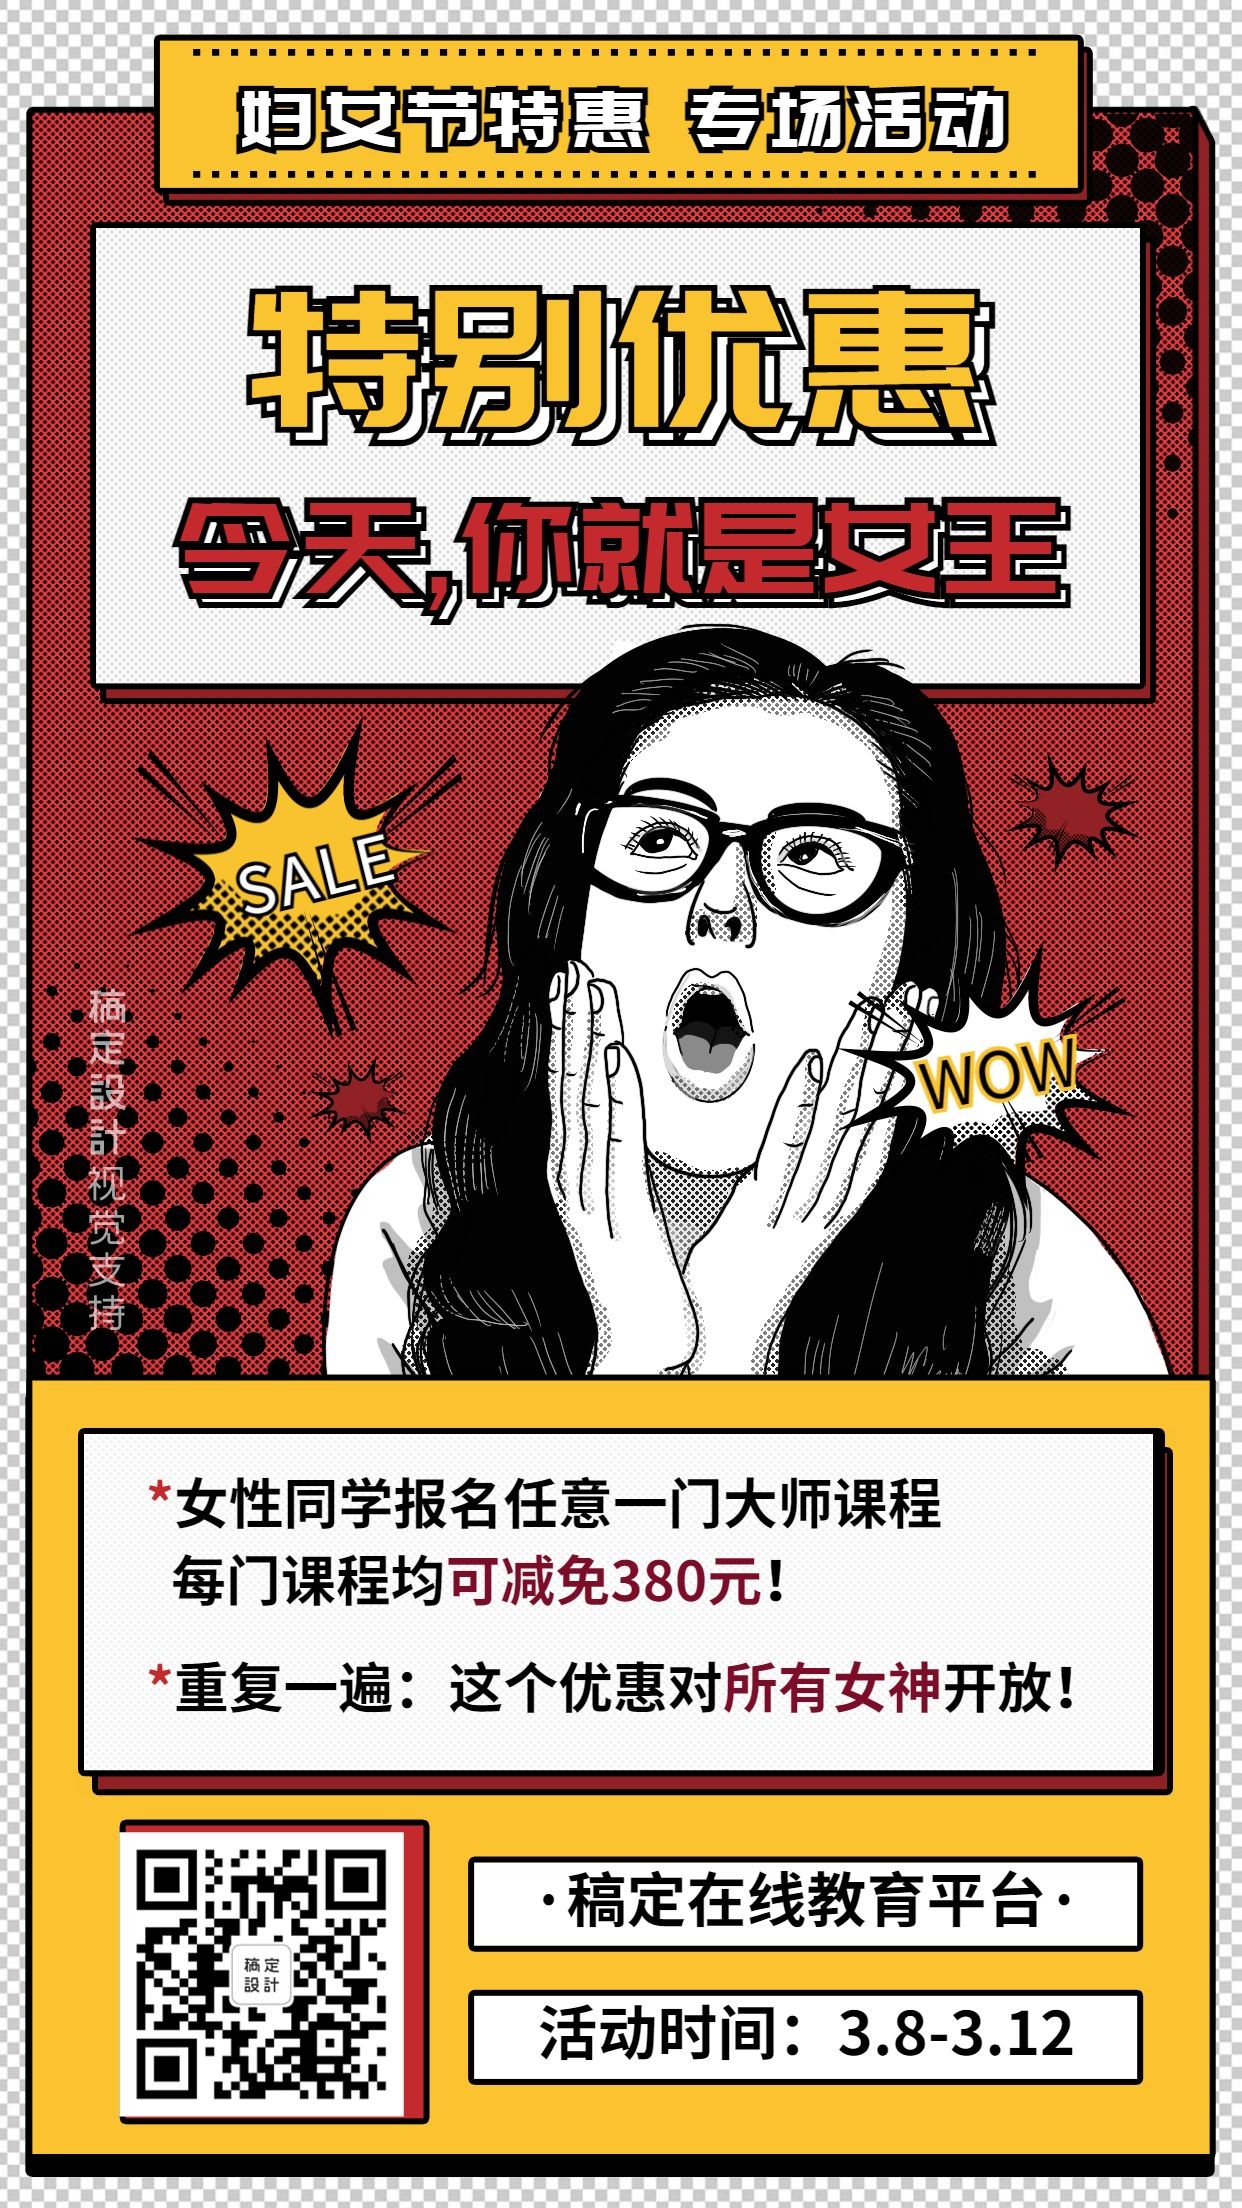 妇女节课程优惠促销宣传海报